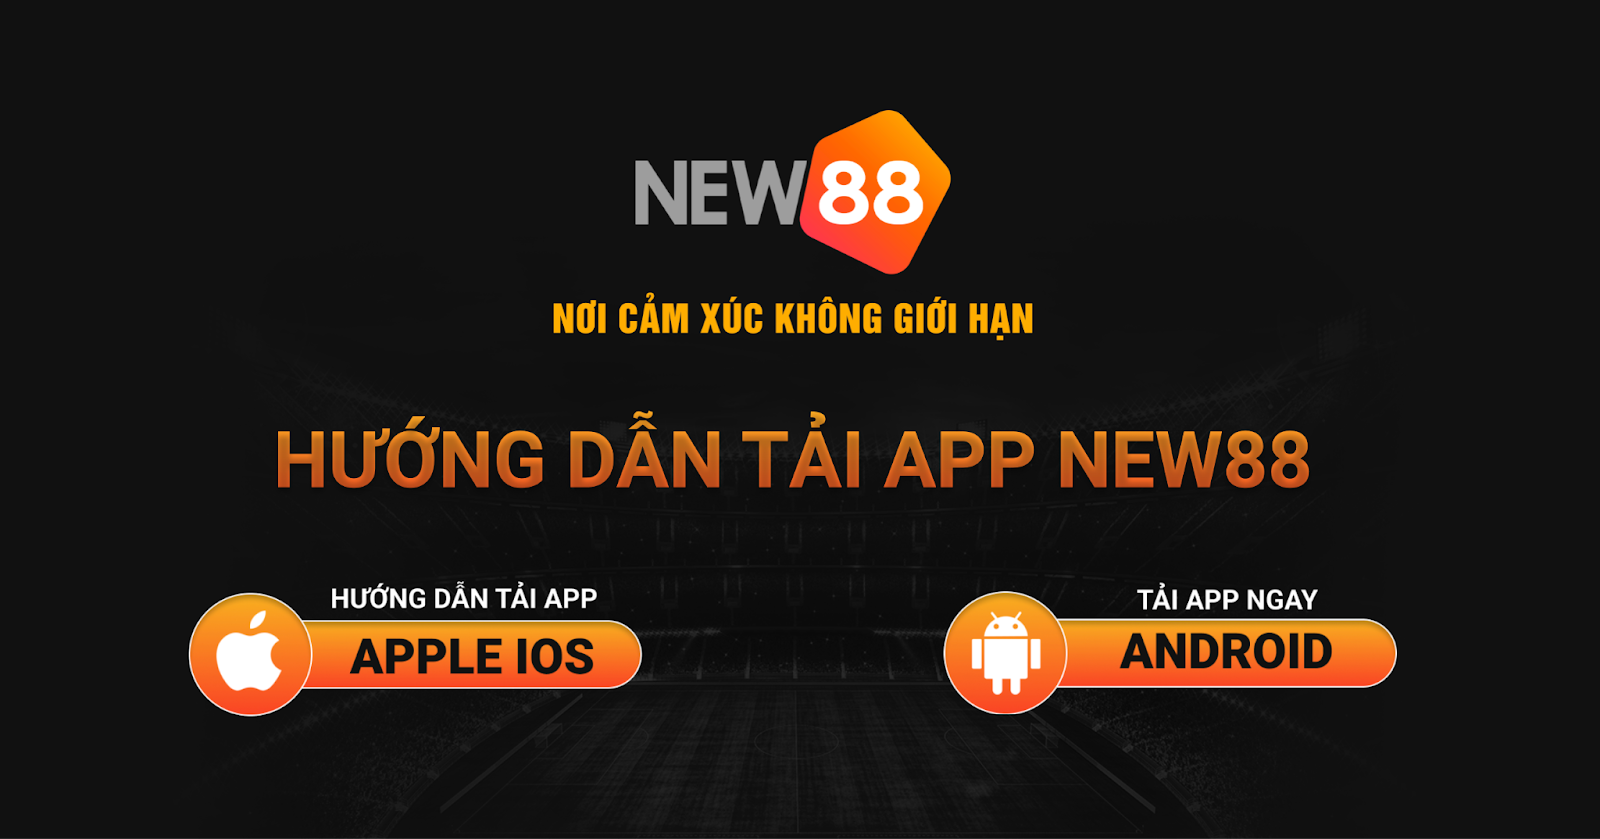 App New88 hiện là sự lựa chọn được xem là tối ưu nhất đối với những người chơi